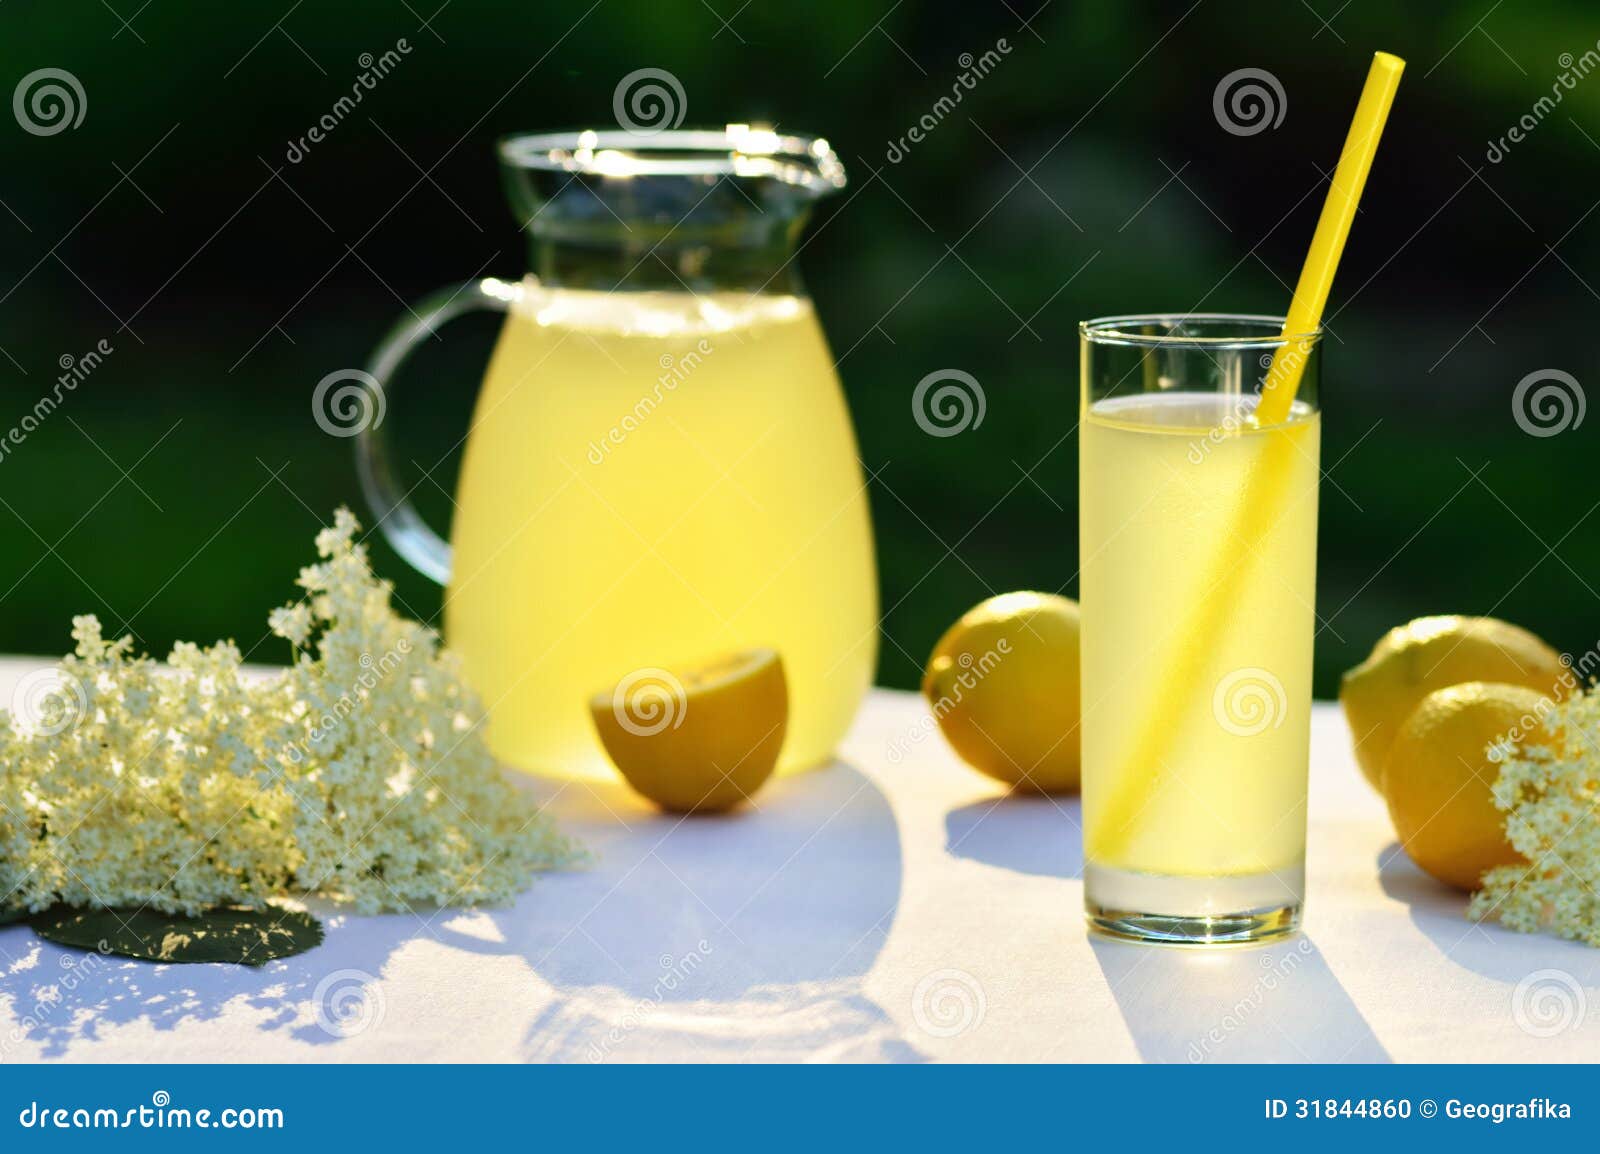 elderflower juice with lemon on table in a garden